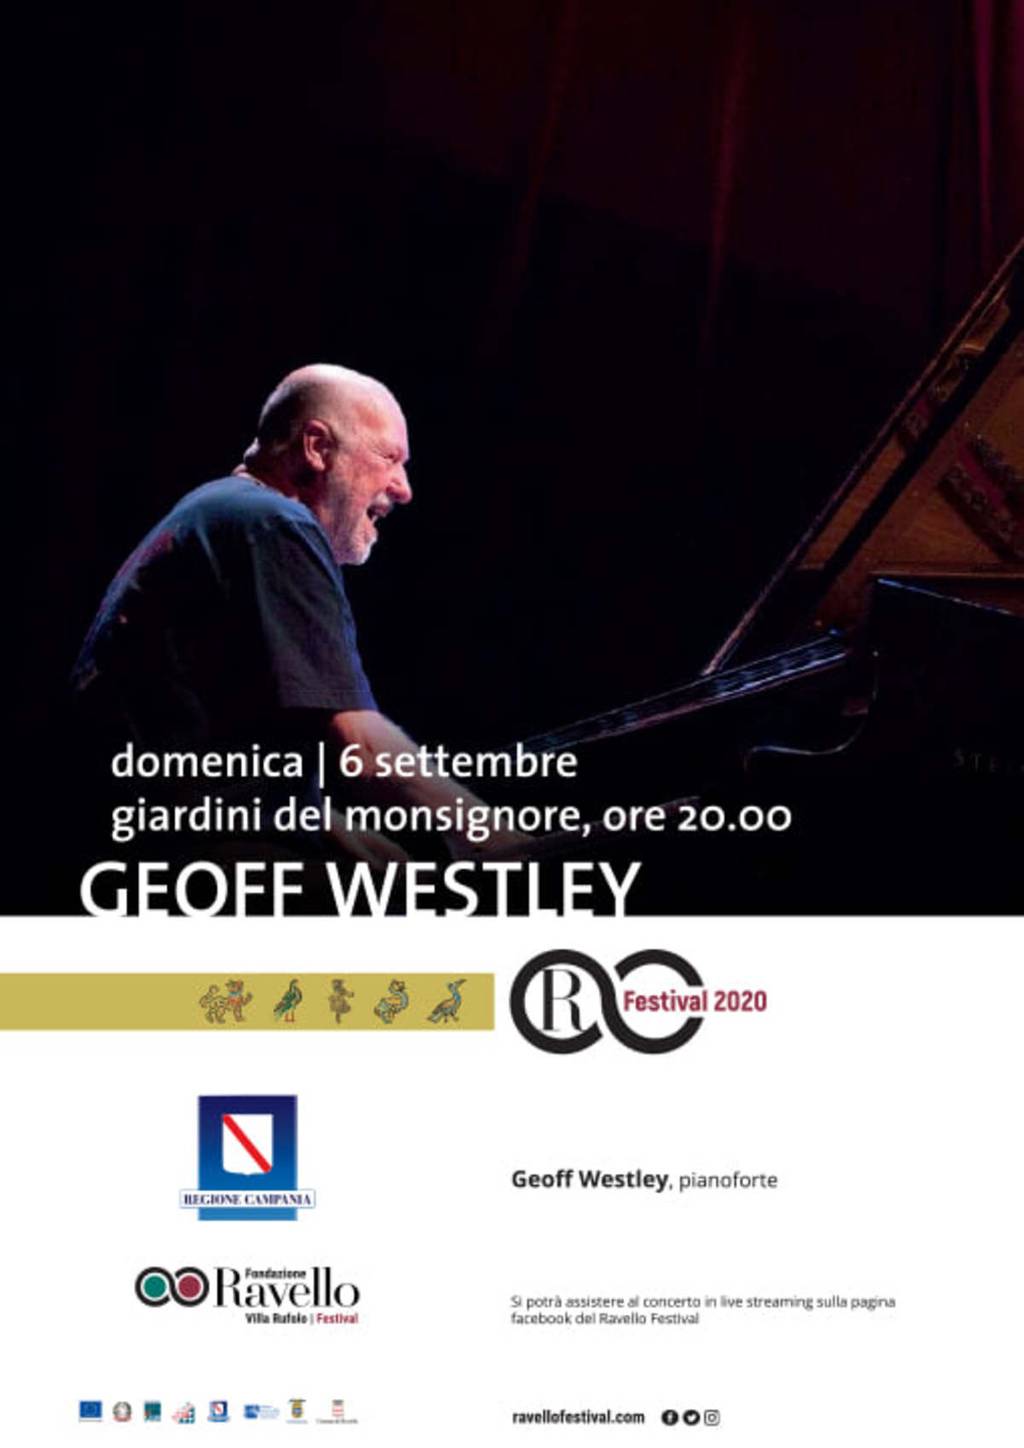 Geoff Westley, pianoforte